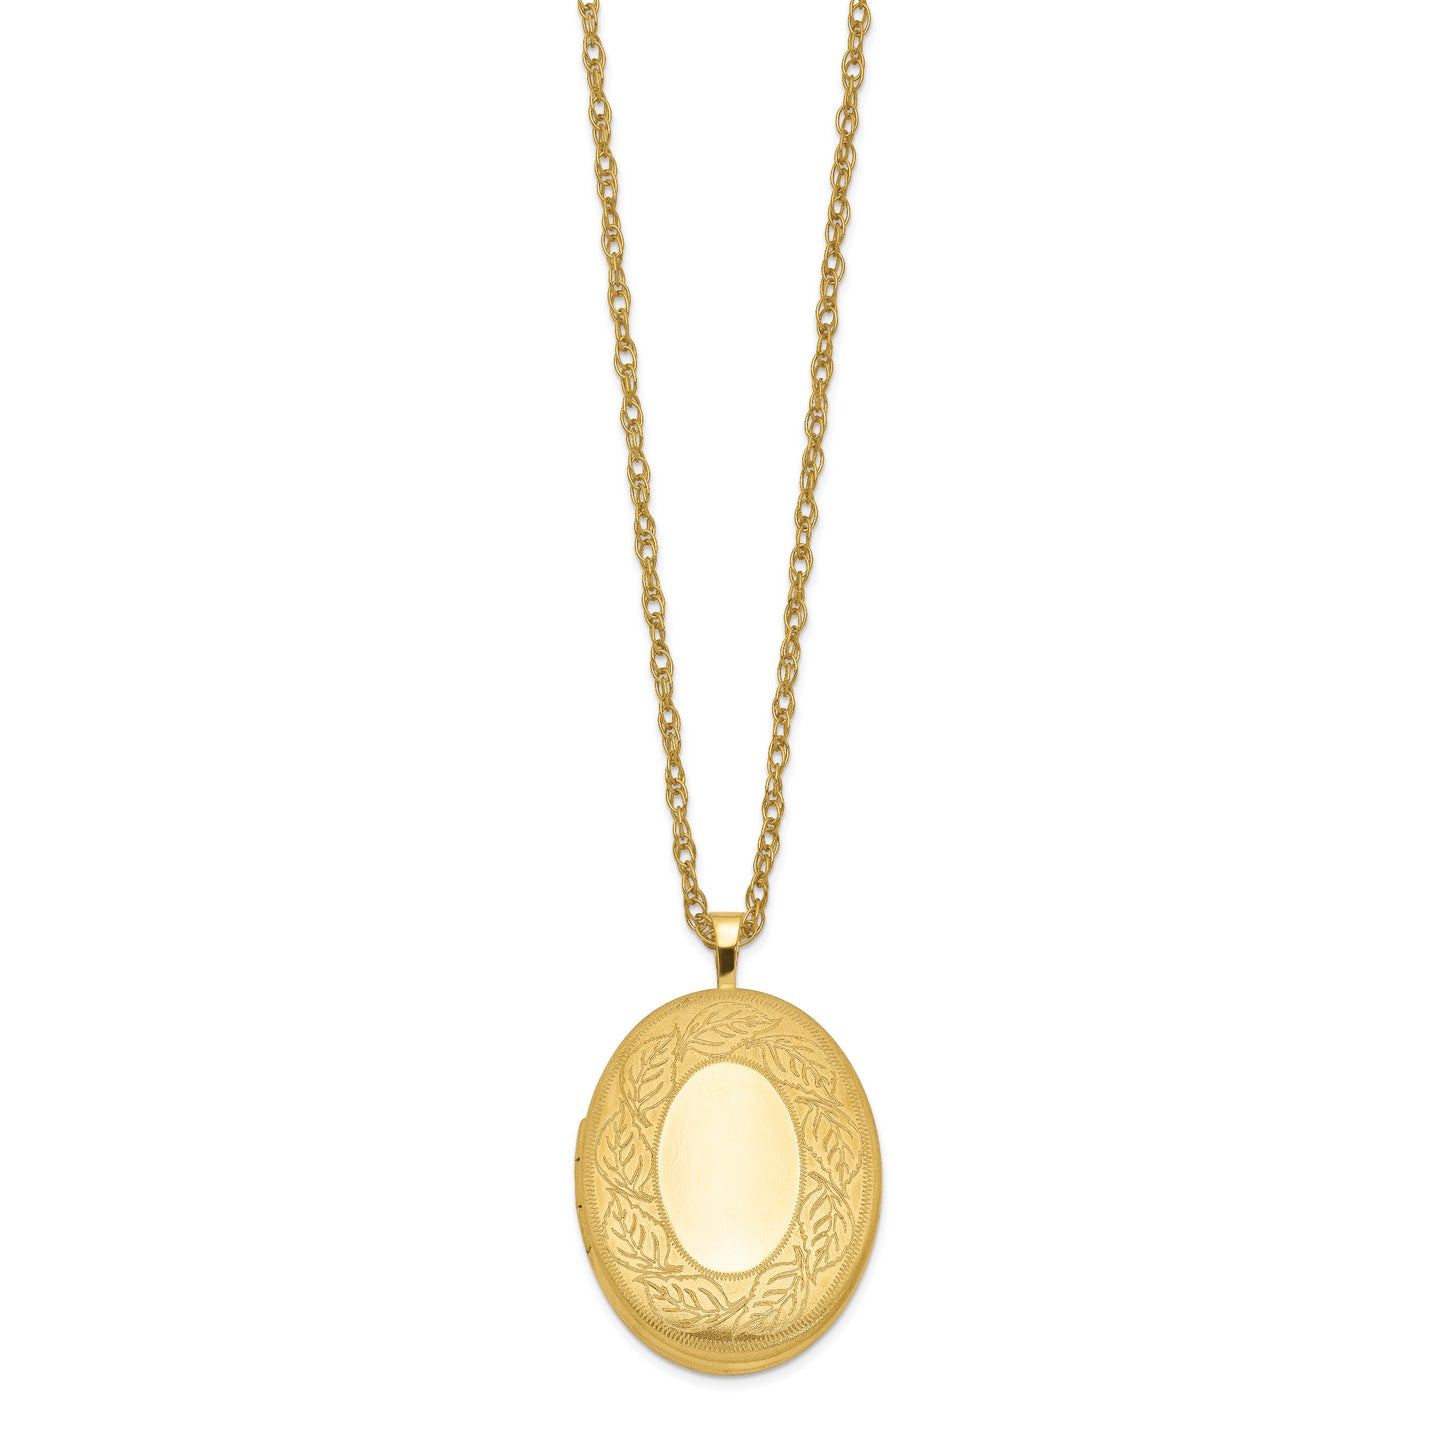 1/20 Gold Filled 26mm Leaf Border Oval Locket Necklace